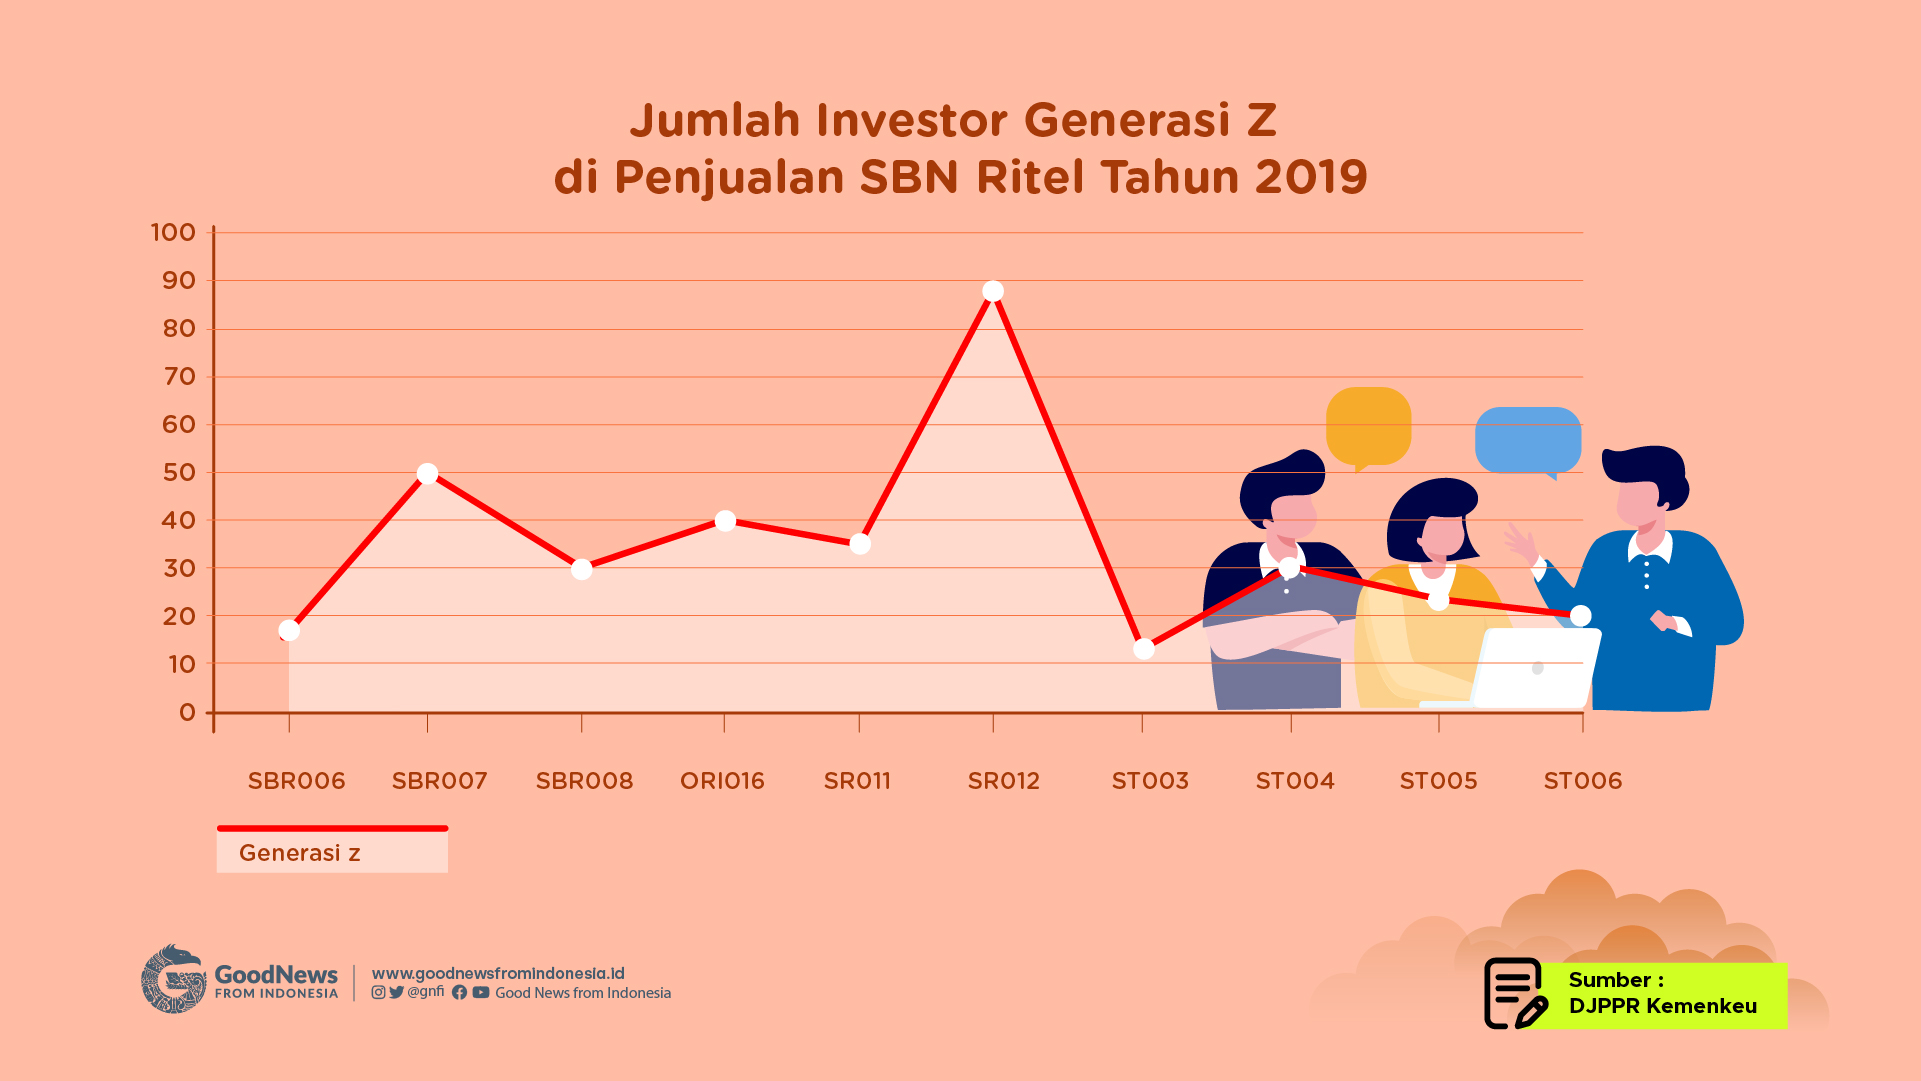 Tahun 2019 merupakan tahun dimana Generasi Z juga sudah mulai tertarik untuk berinvestasi SBN Ritel 